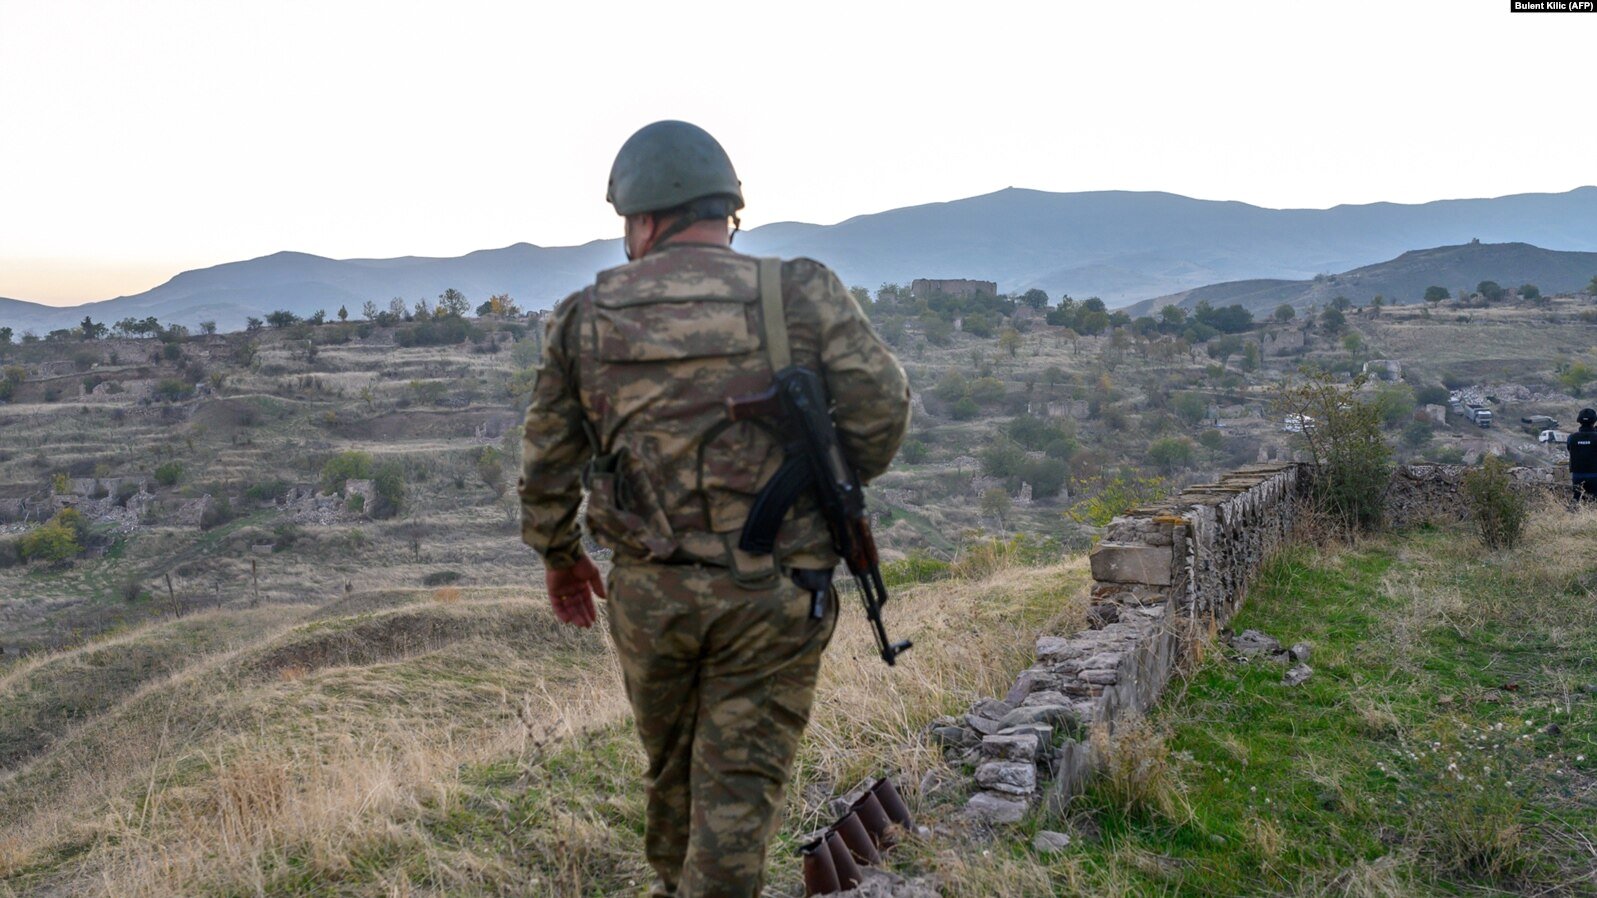 Ստեփանակերտ-Բերձոր ճանապարհին տեղի ունեցած միջադեպի հետևանքով վիրավորվել է 3 ադրբեջանցի զինծառայող